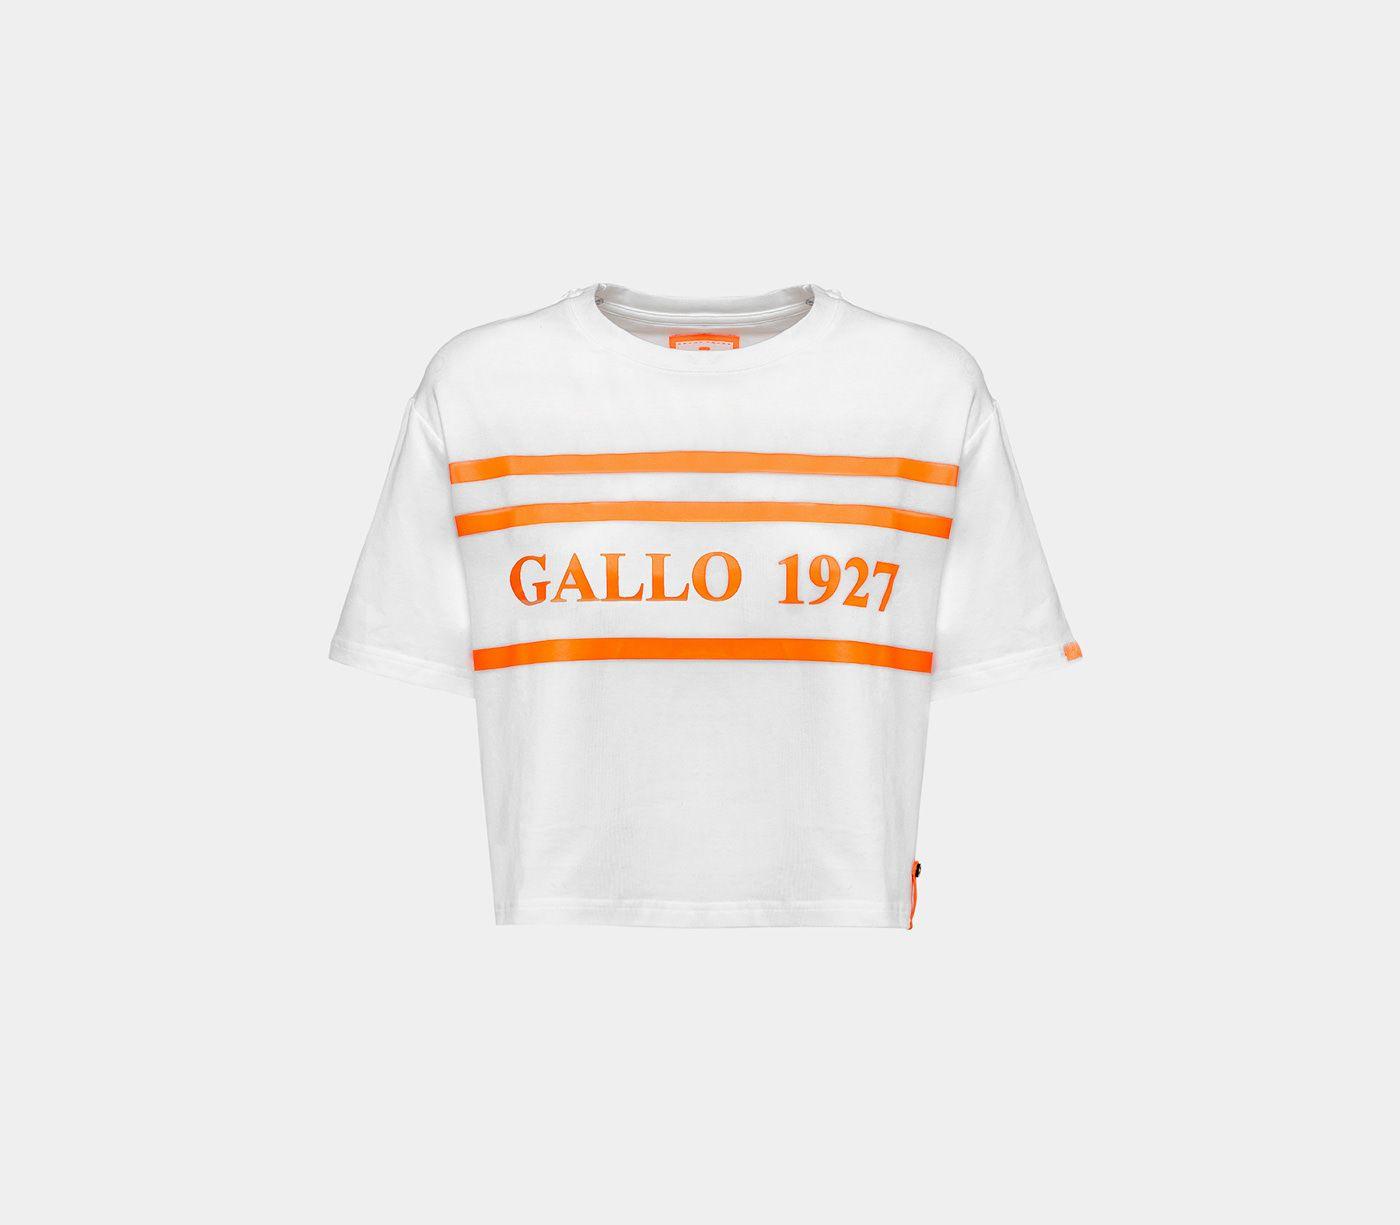 Gallo Logo - Gallo Online Shop WOMEN'S T-SHIRT WITH GALLO 1927 LOGO AP508075-11624